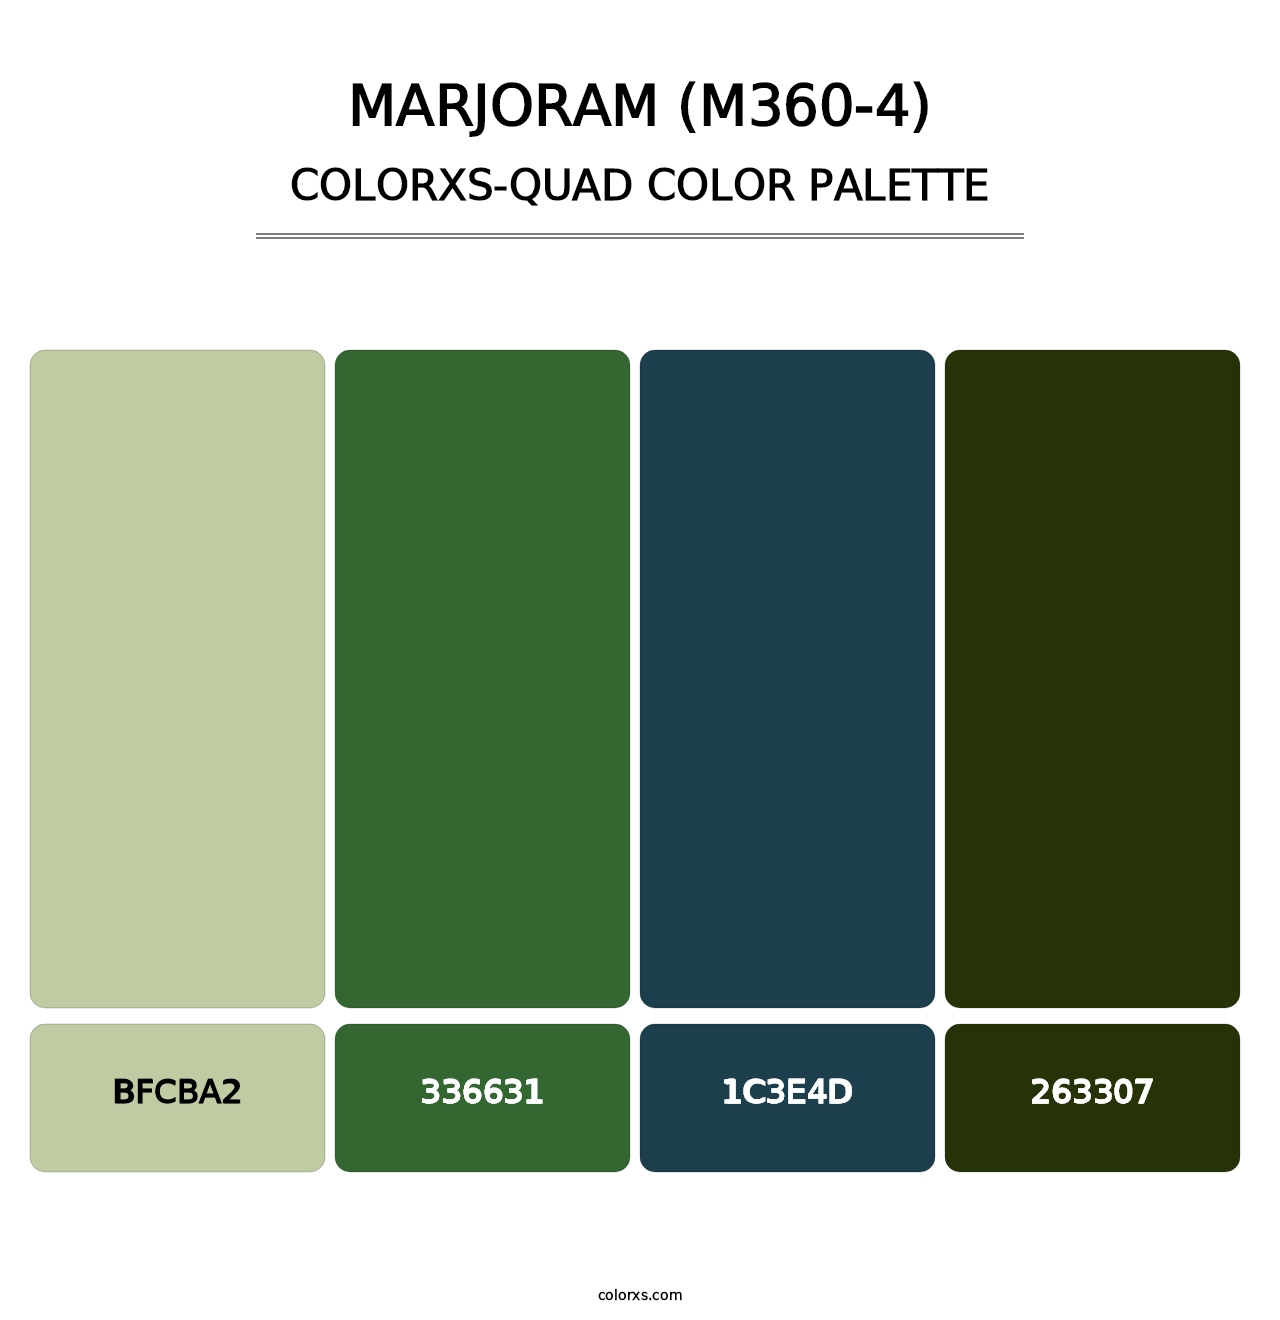 Marjoram (M360-4) - Colorxs Quad Palette